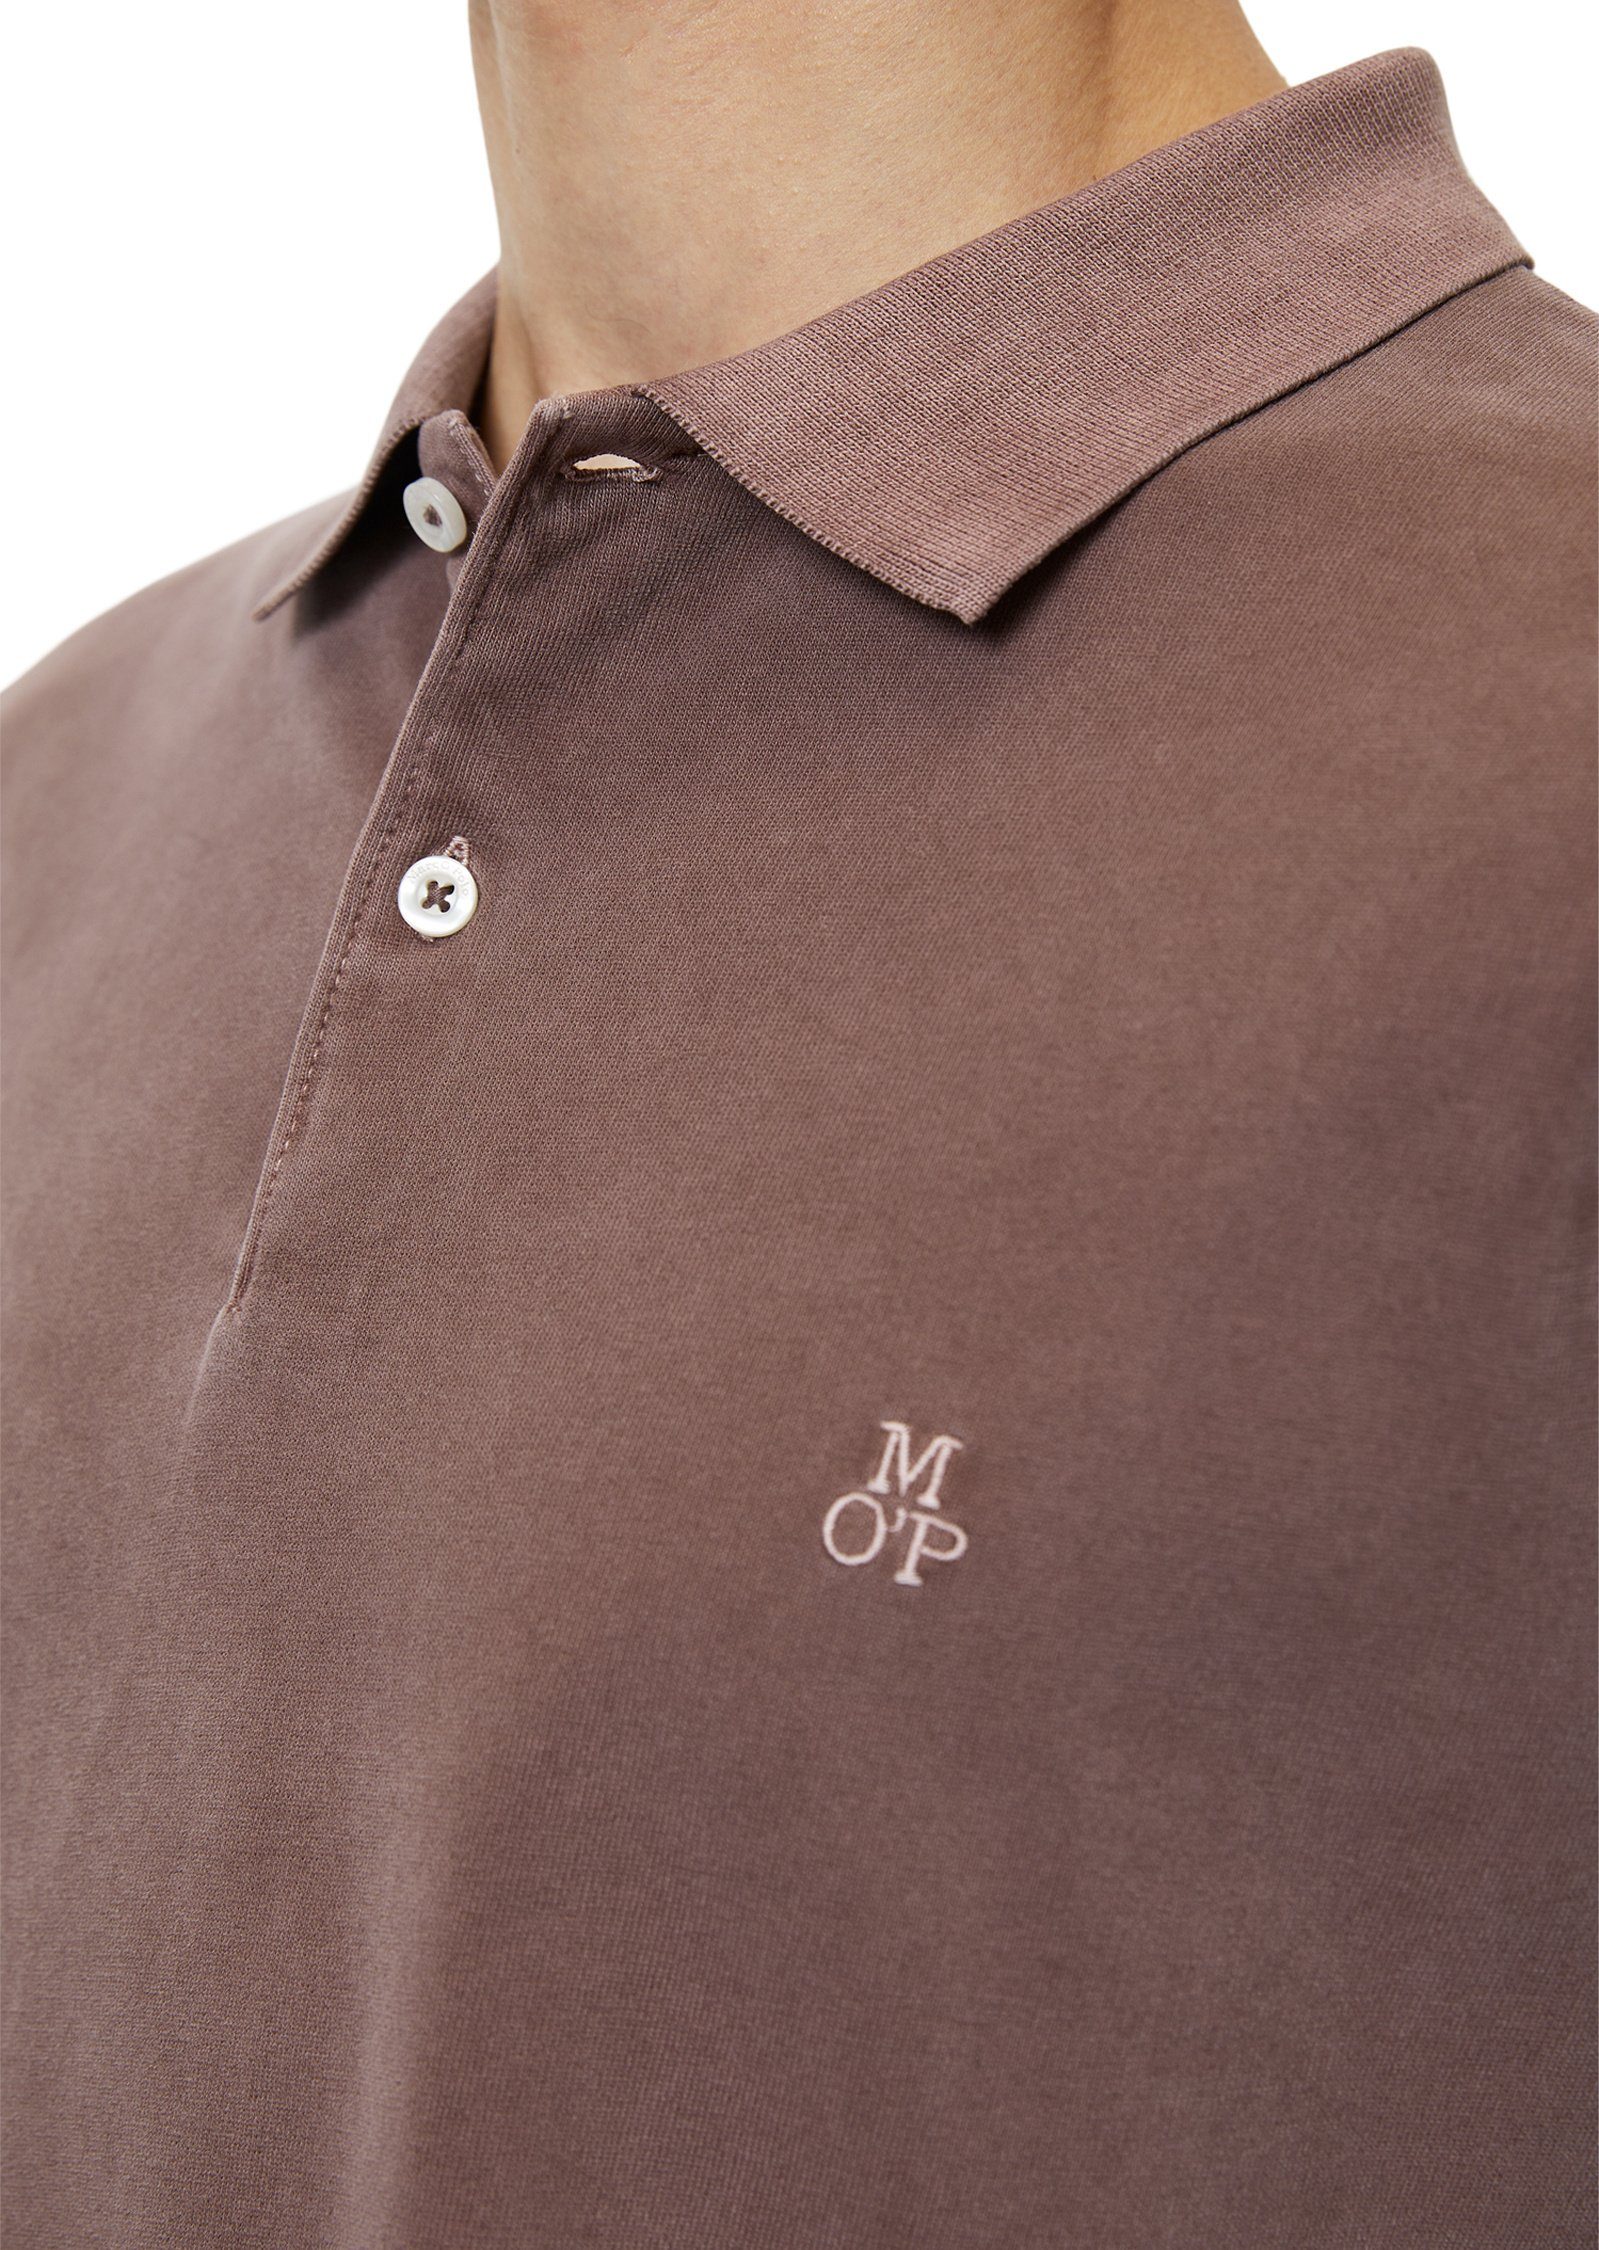 Marc O'Polo Langarm-Poloshirt Soft-Touch-Jersey-Qualität braun in schwerer